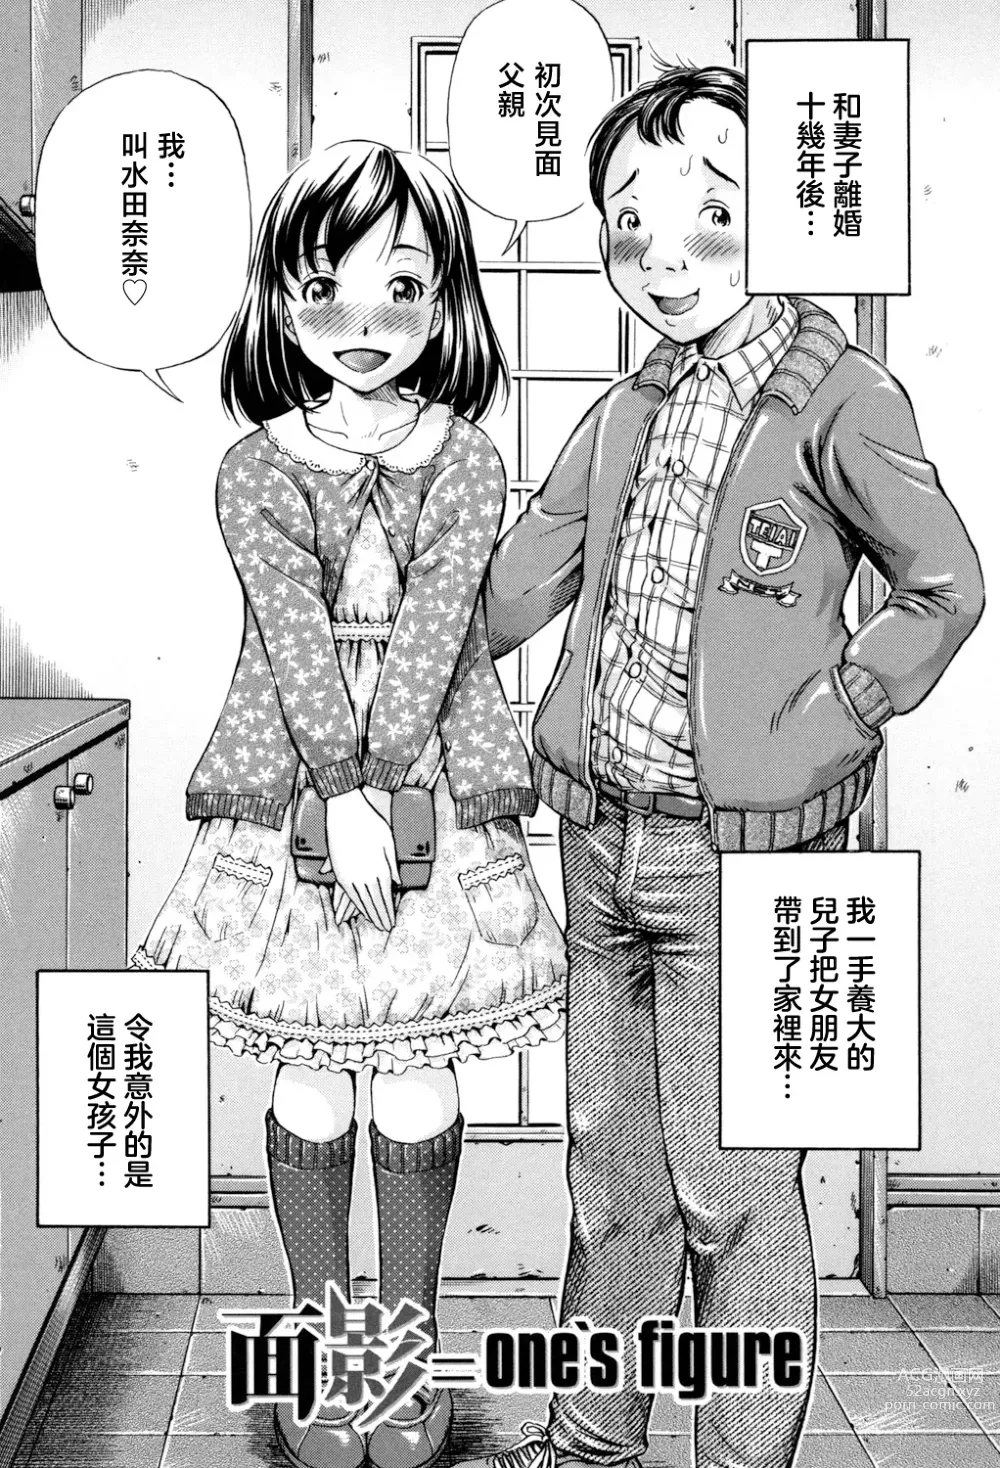 Page 1 of manga Omokage ＝ ones figure